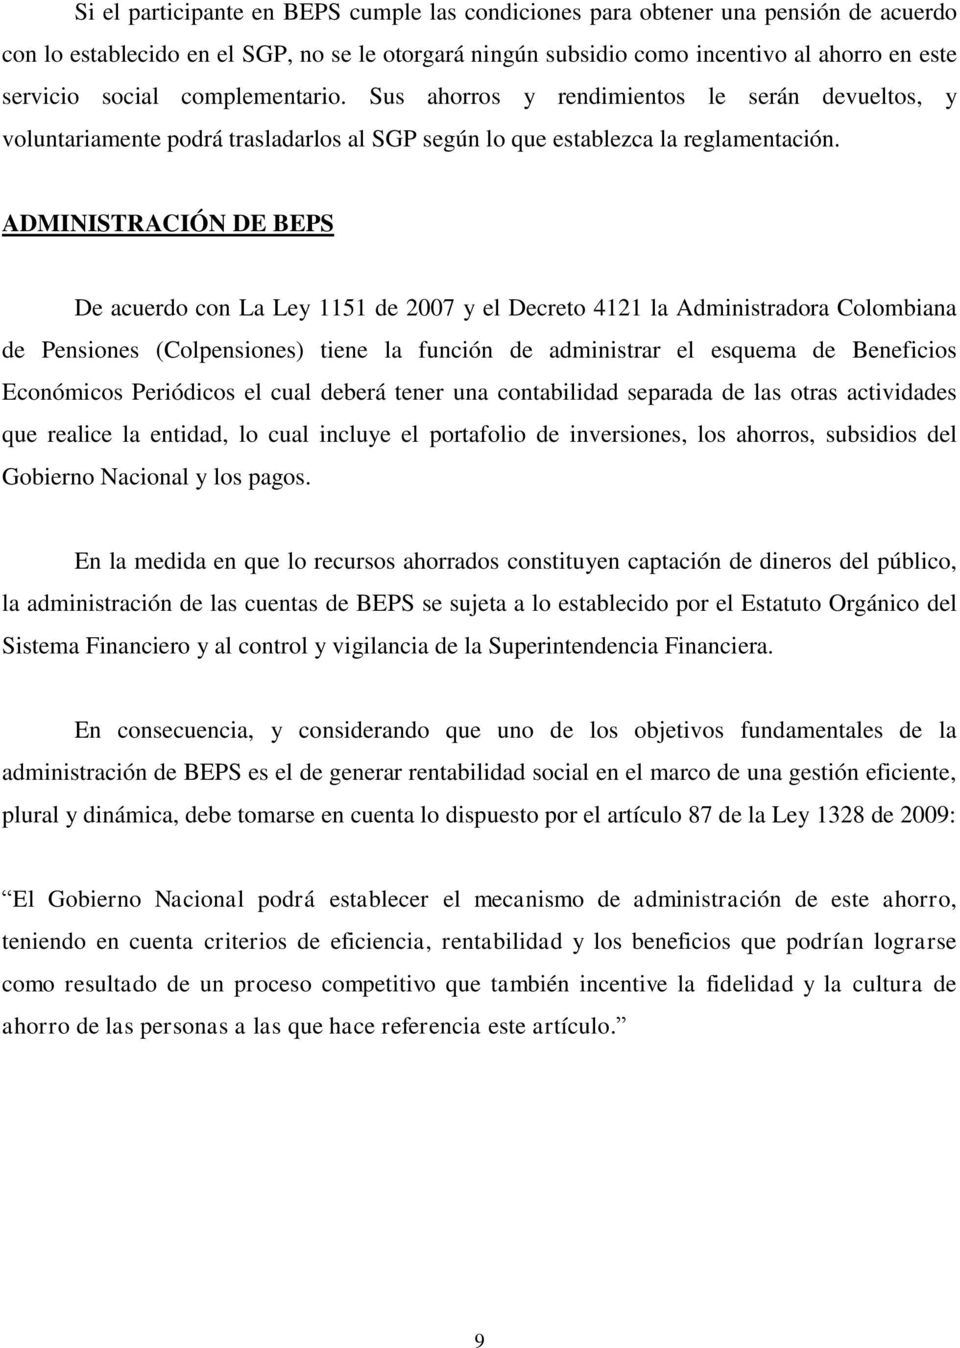 ADMINISTRACIÓN DE BEPS De acuerdo con La Ley 1151 de 2007 y el Decreto 4121 la Administradora Colombiana de Pensiones (Colpensiones) tiene la función de administrar el esquema de Beneficios